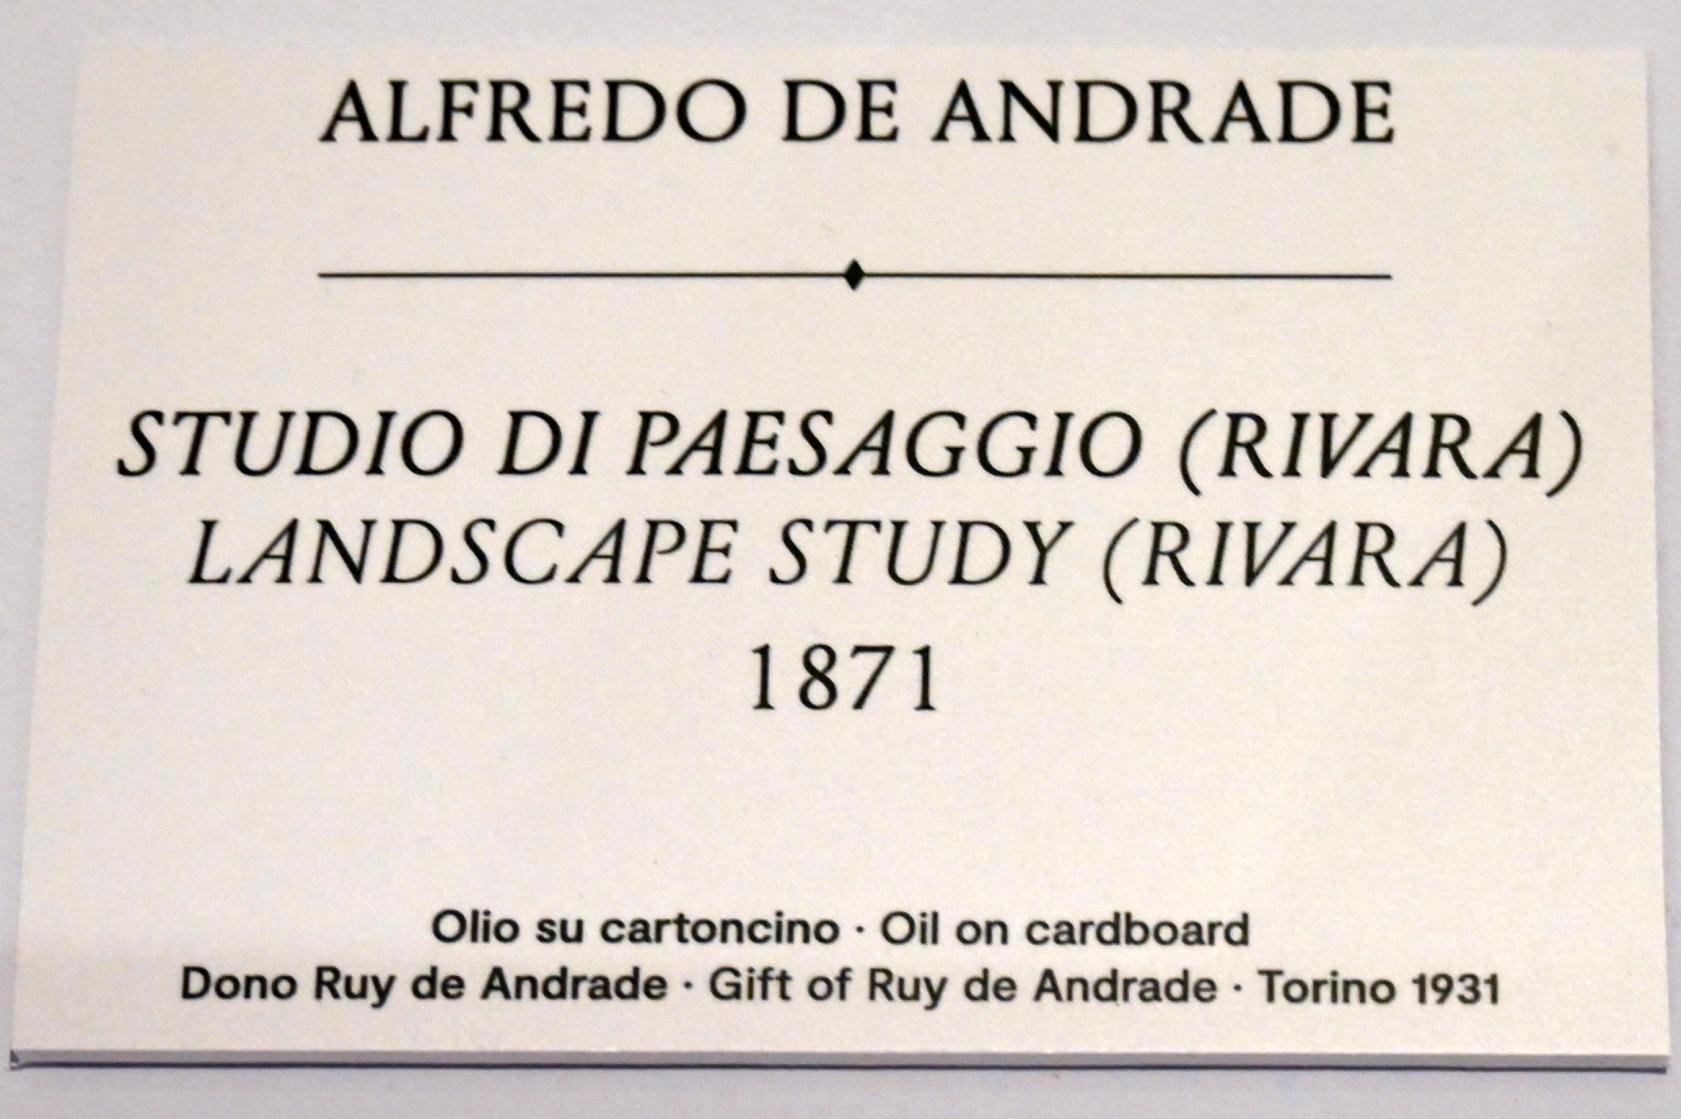 Alfredo d’Andrade (1867–1871), Landschaftsstudie (Rivara), Turin, GAM Torino, Ausstellung "Natur und Wahrheit" vom 09.07.-17.10.2021, 1871, Bild 2/2